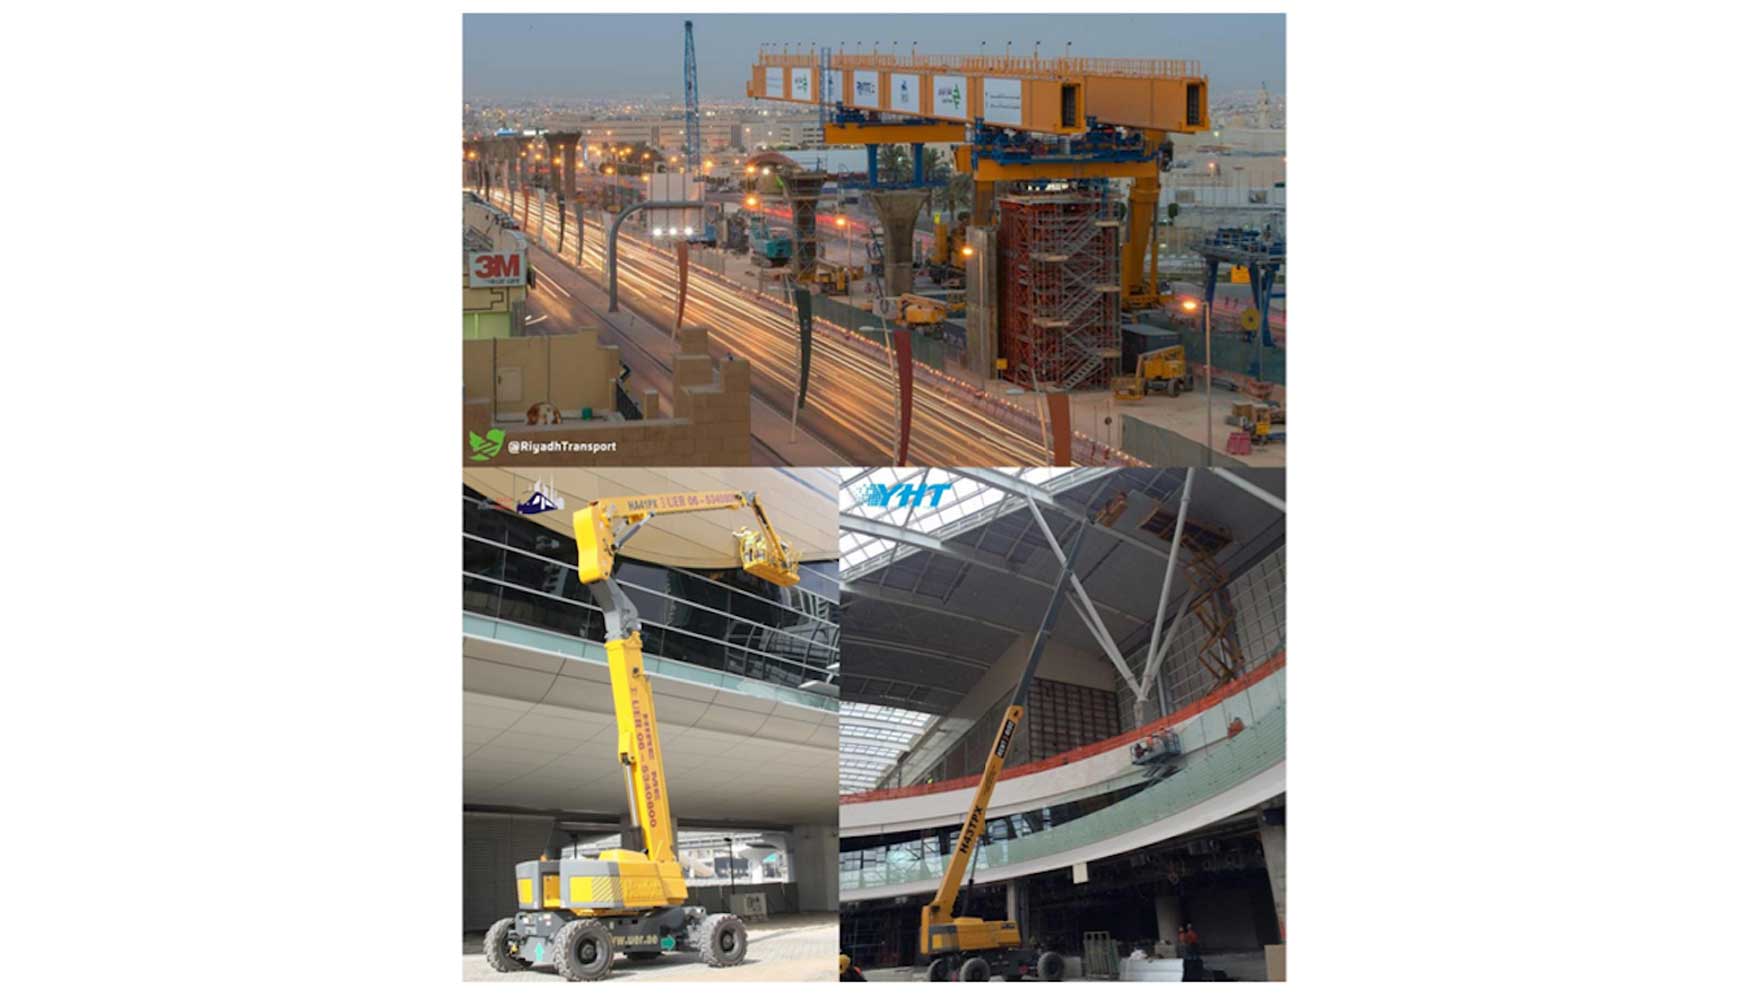 Plataformas Haulotte en diferentes proyectos ferroviarios en Oriente Medio